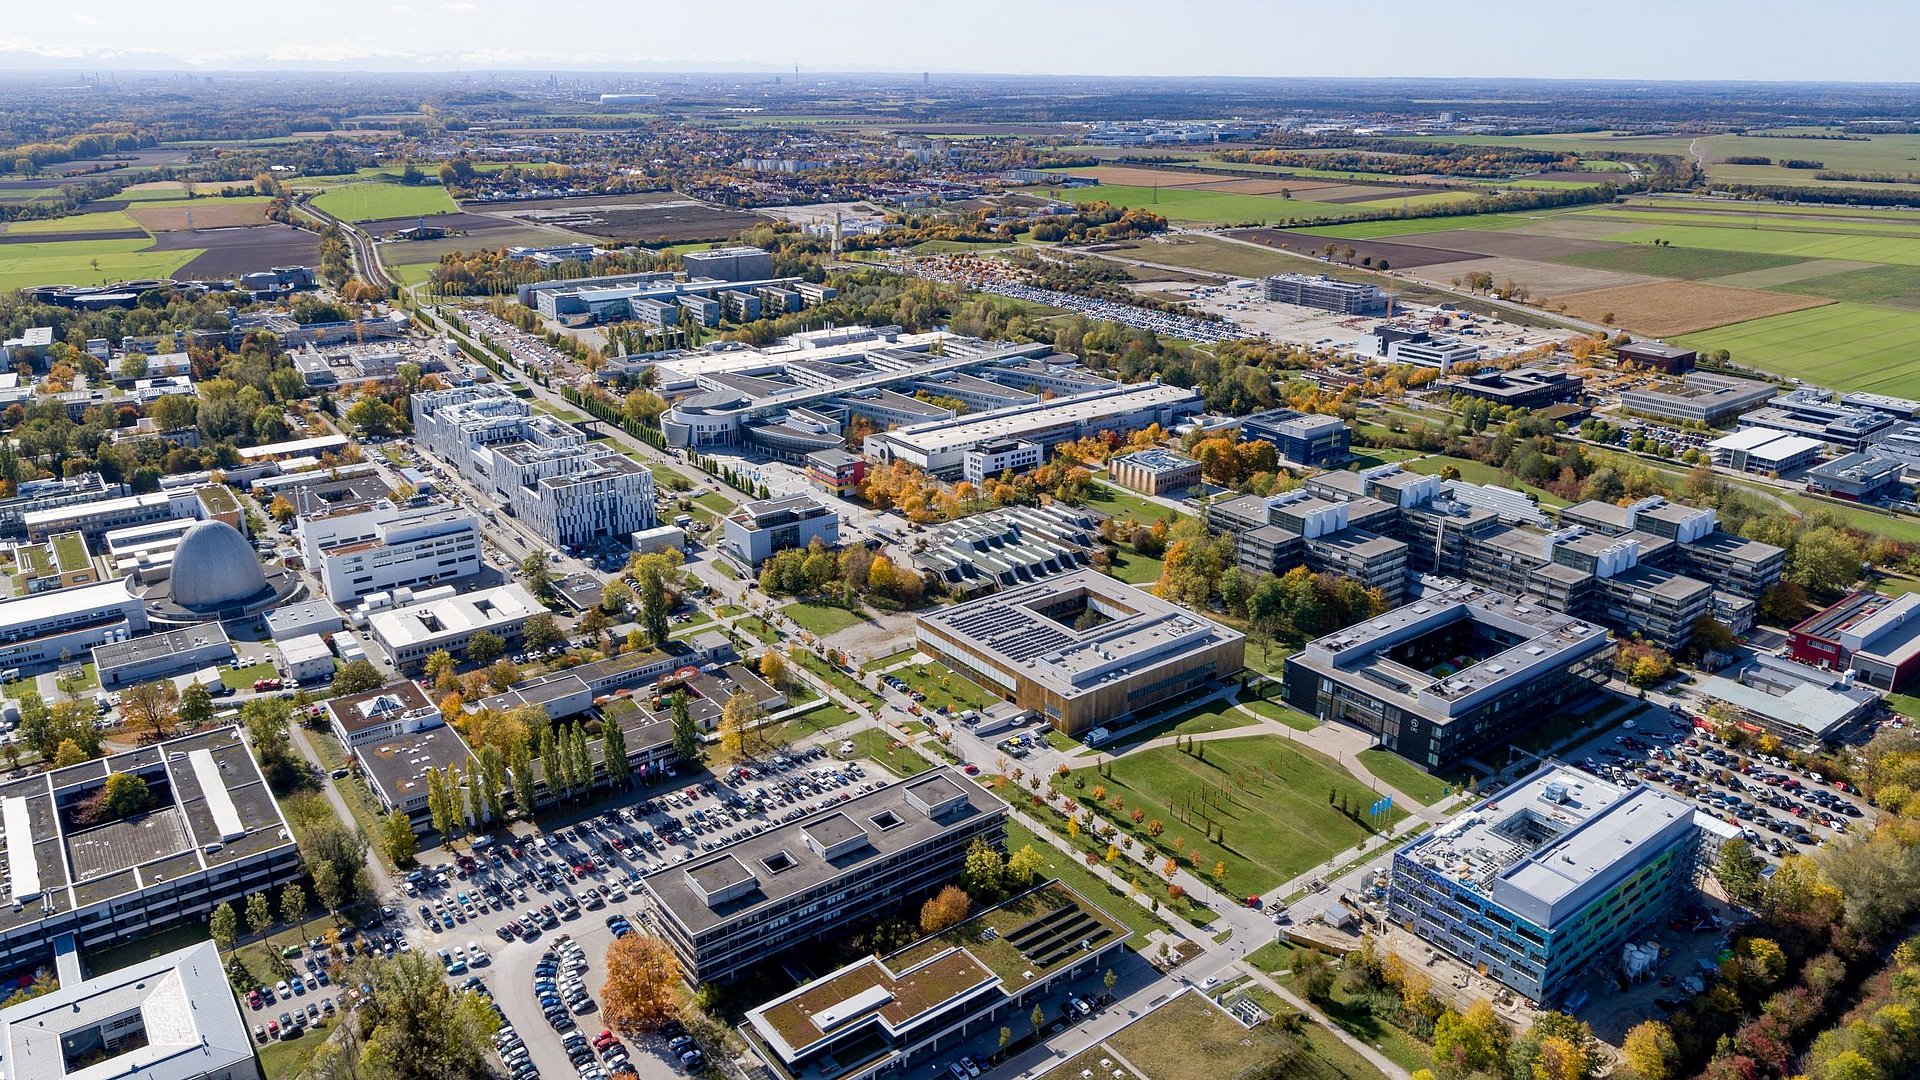 Luftbildaufnahme des Forschungscampus Garching im Jahr 2021